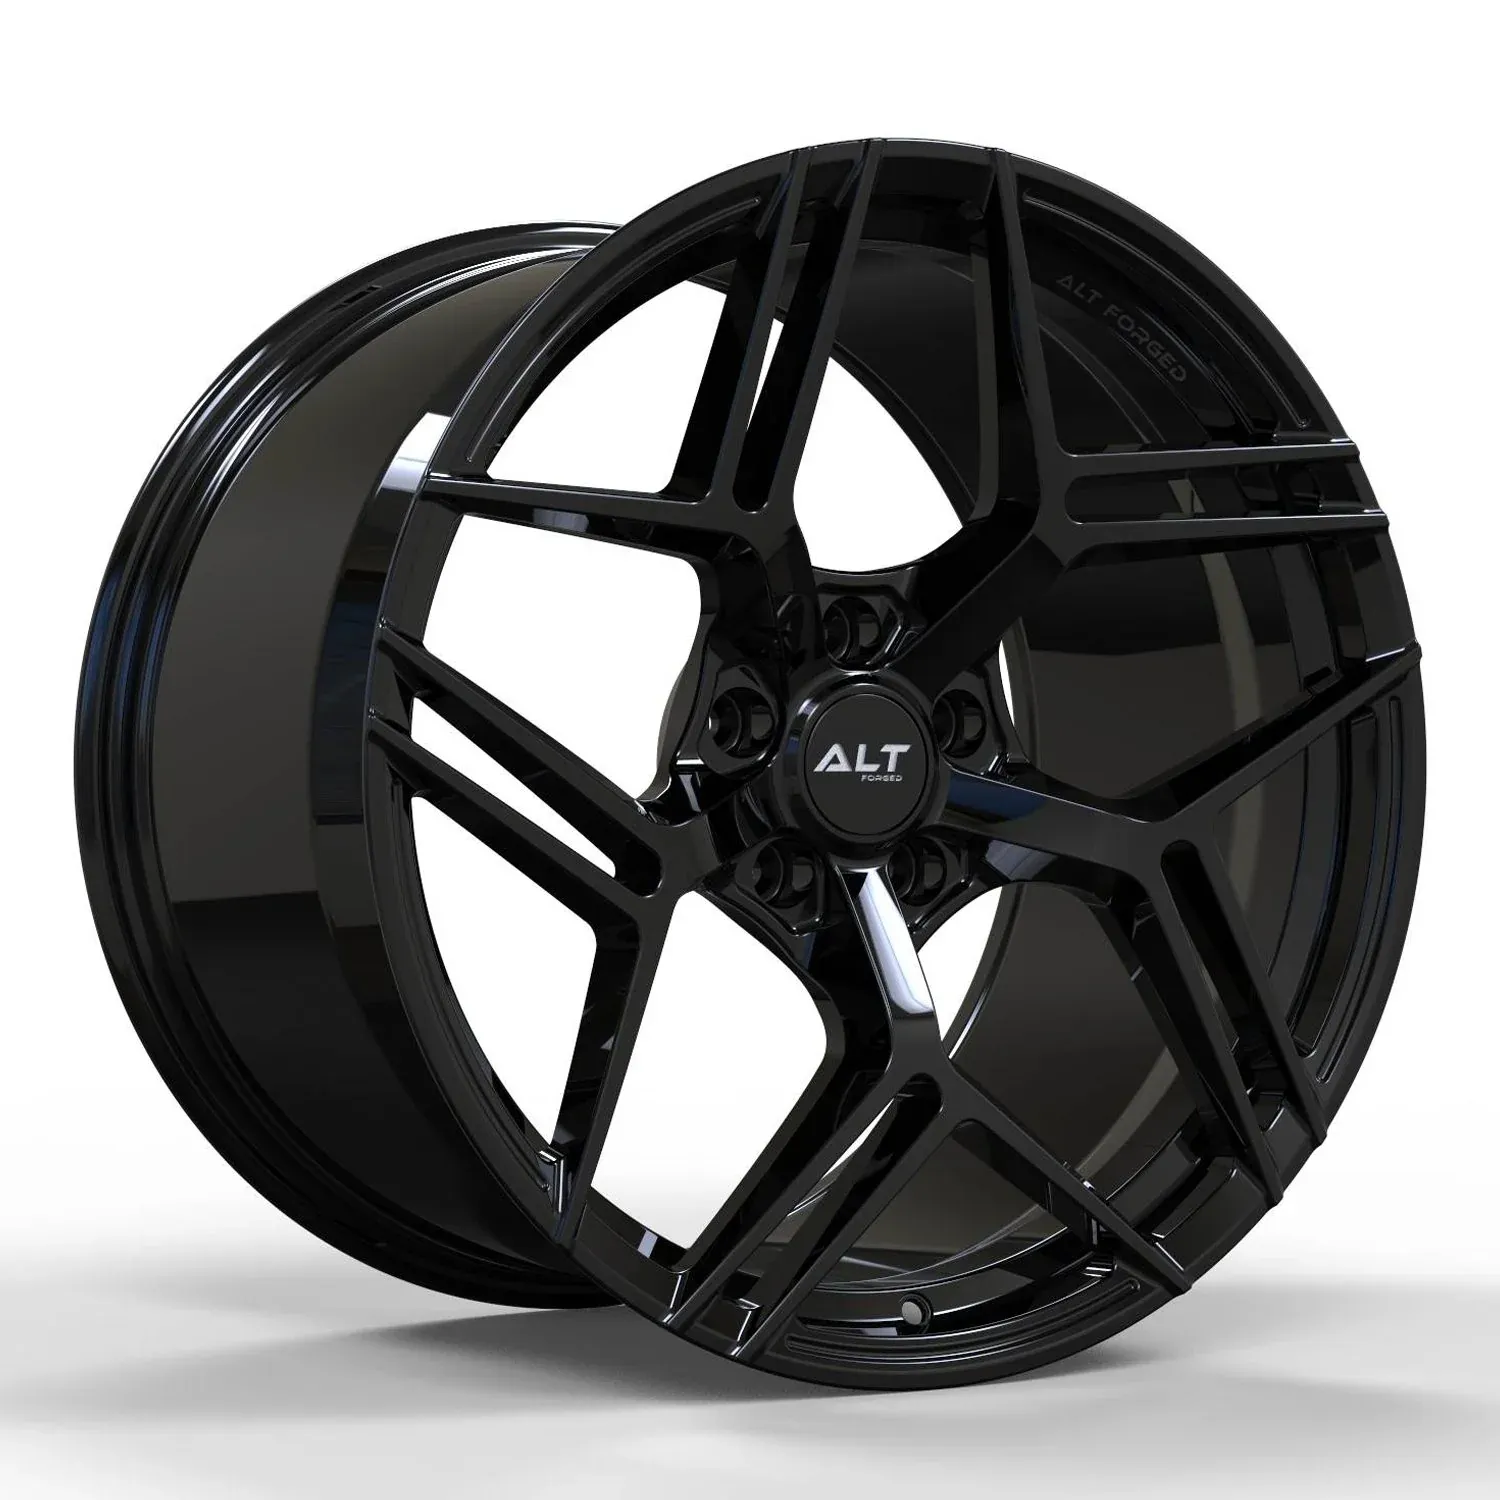 ALT12R Forged Carbon Flash wheels for C8 Corvette Z51